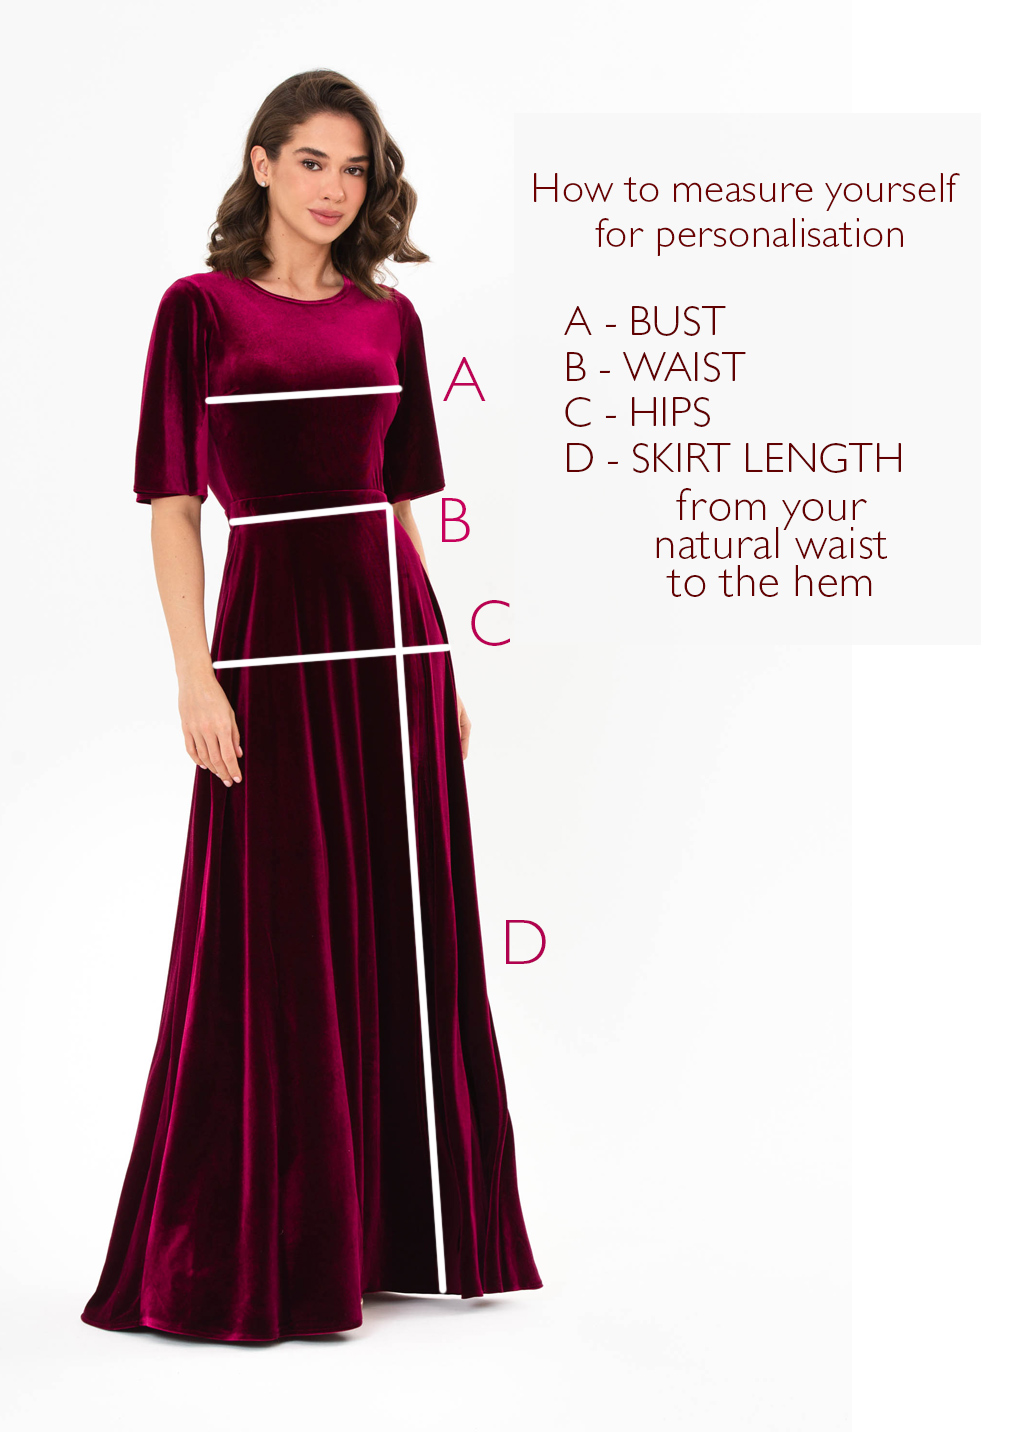 Plum burgundy velvet wrap slit dress